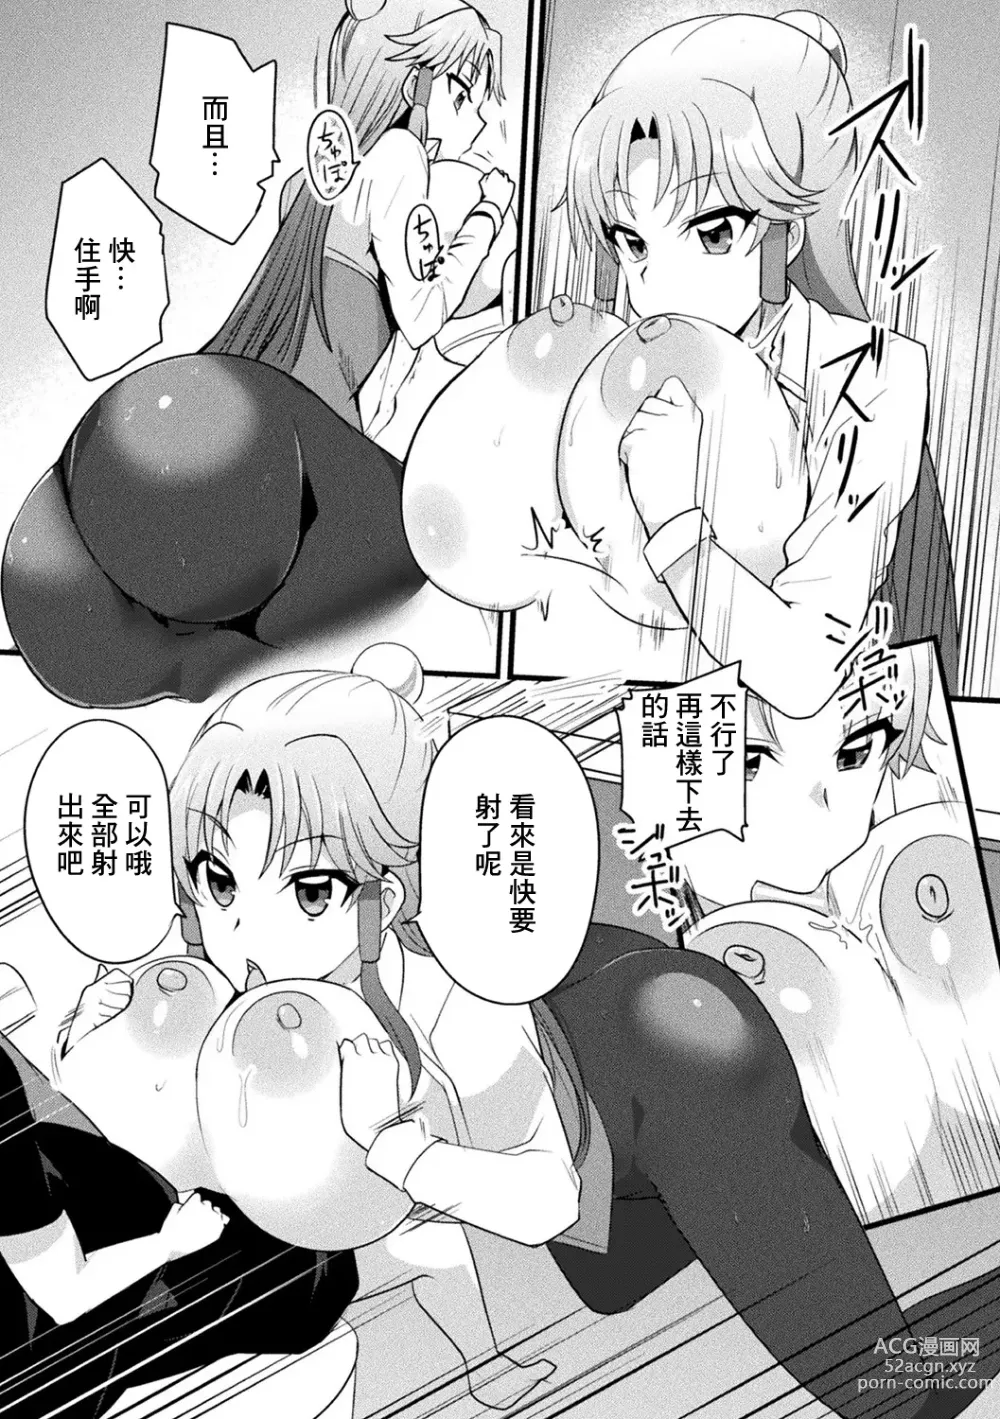 Page 7 of manga Mama Doko Doko - Mom! Where are you?